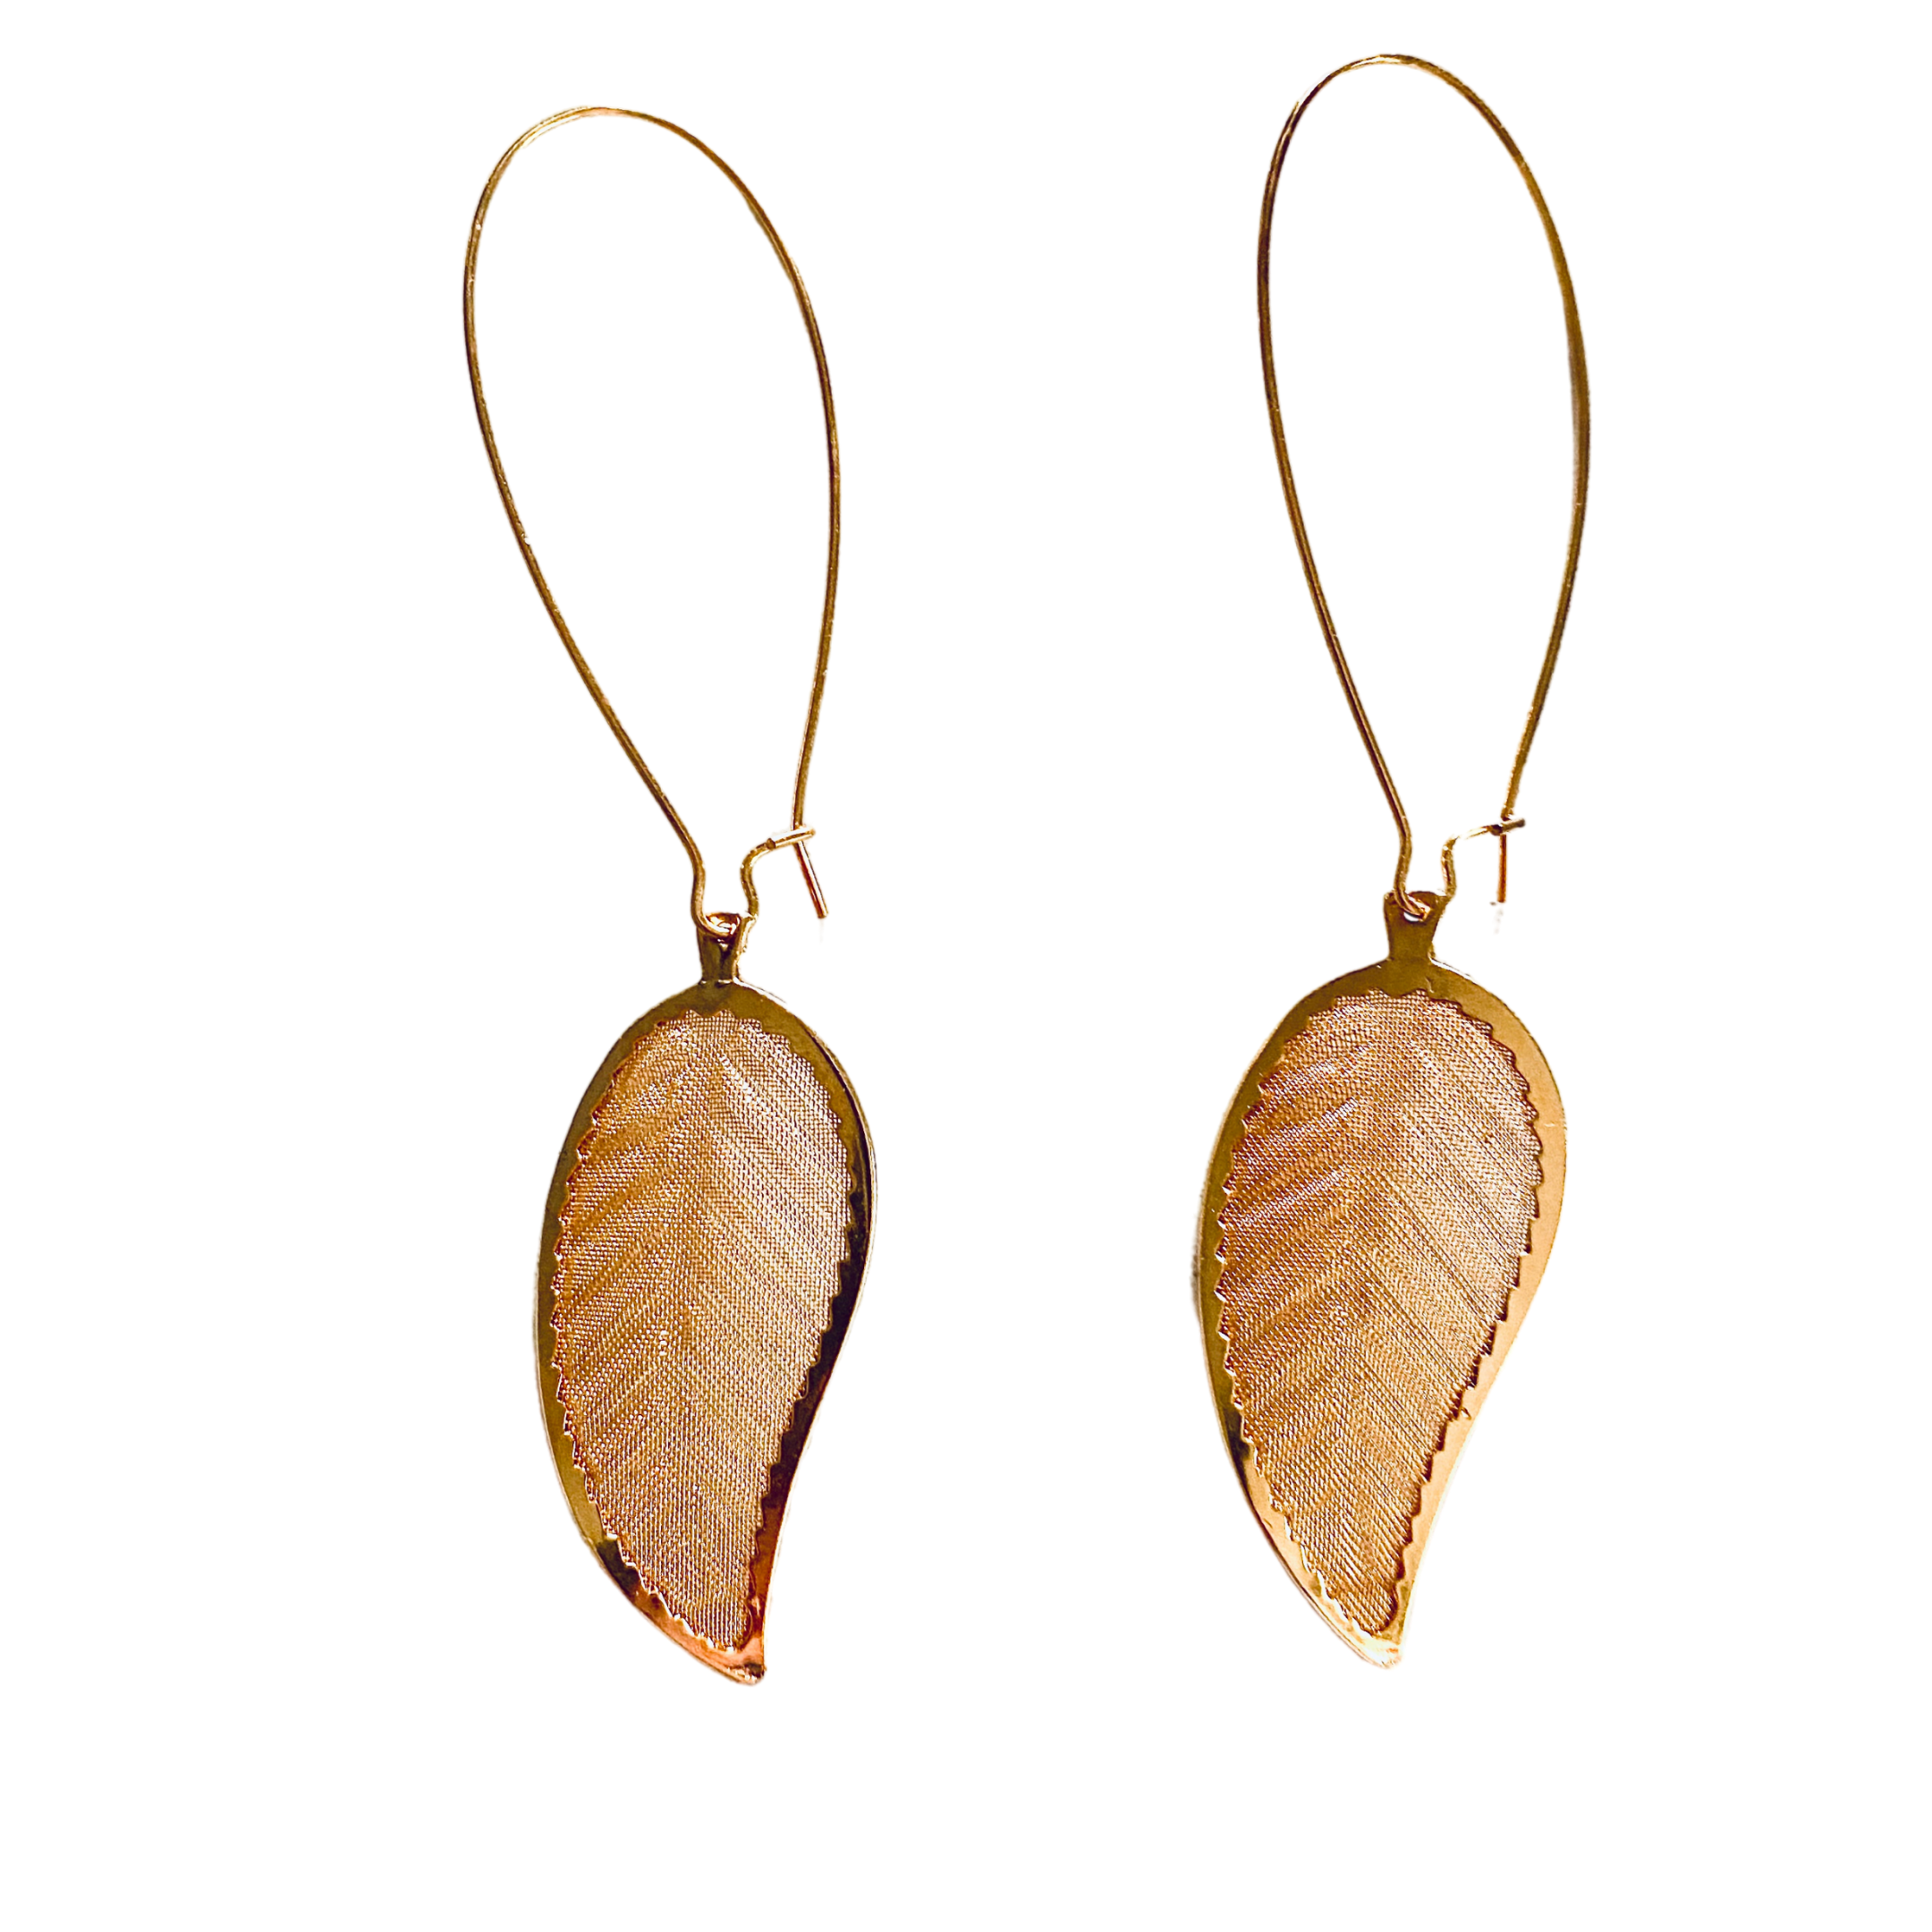 Leaf Gold Earrings - Irit Sorokin Designs Jewelry